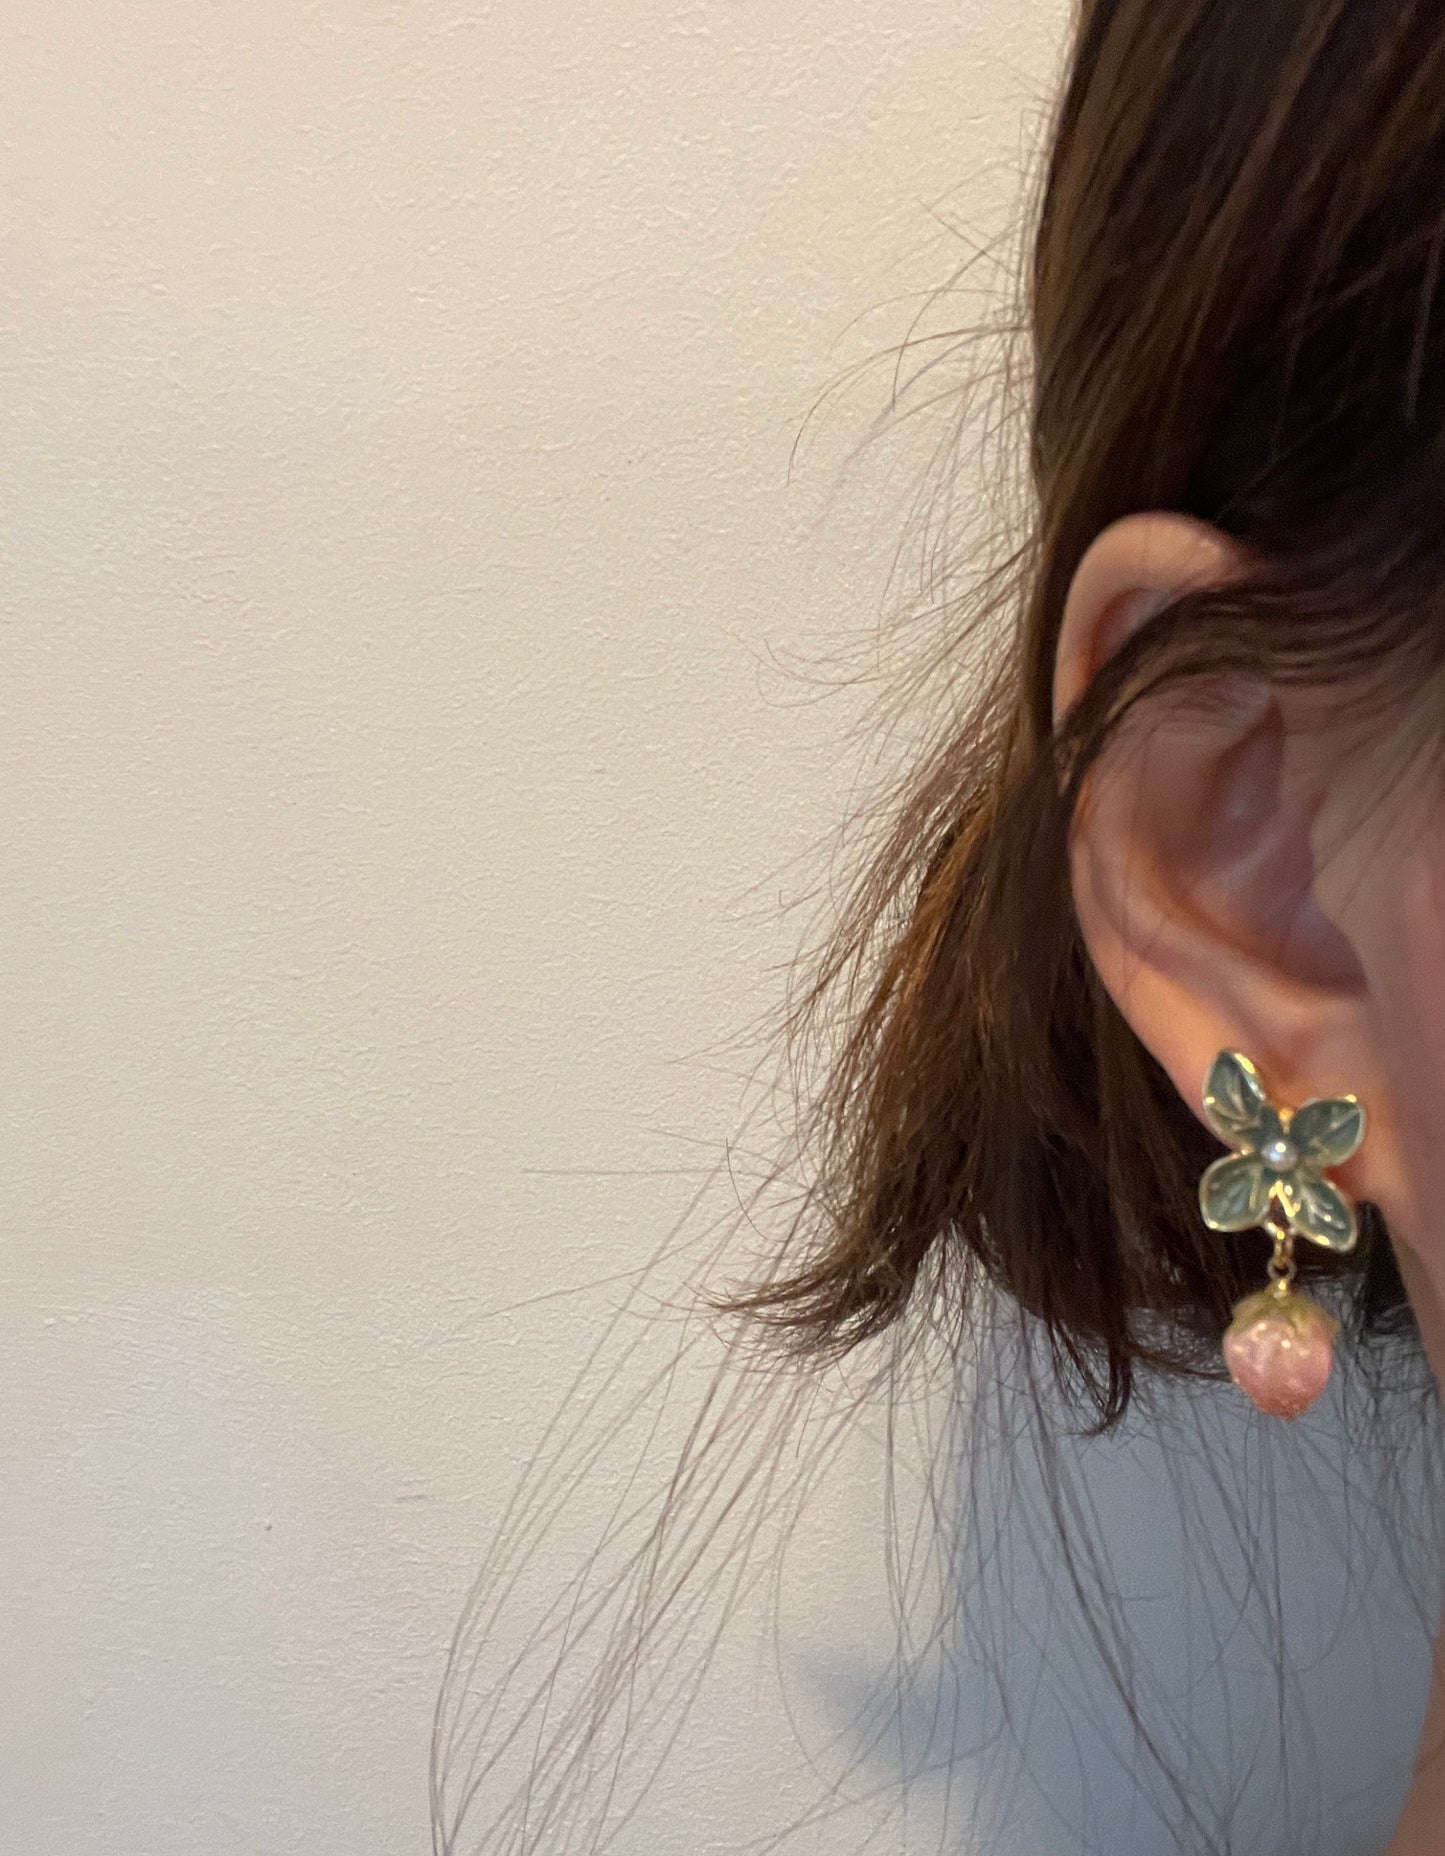 Strawberry Earrings, Pink Earrings, Green Vine Earrings, Resin Earrings, Y2K Cute Earrings, Chunky Earrings, Statement Earrings, Creative